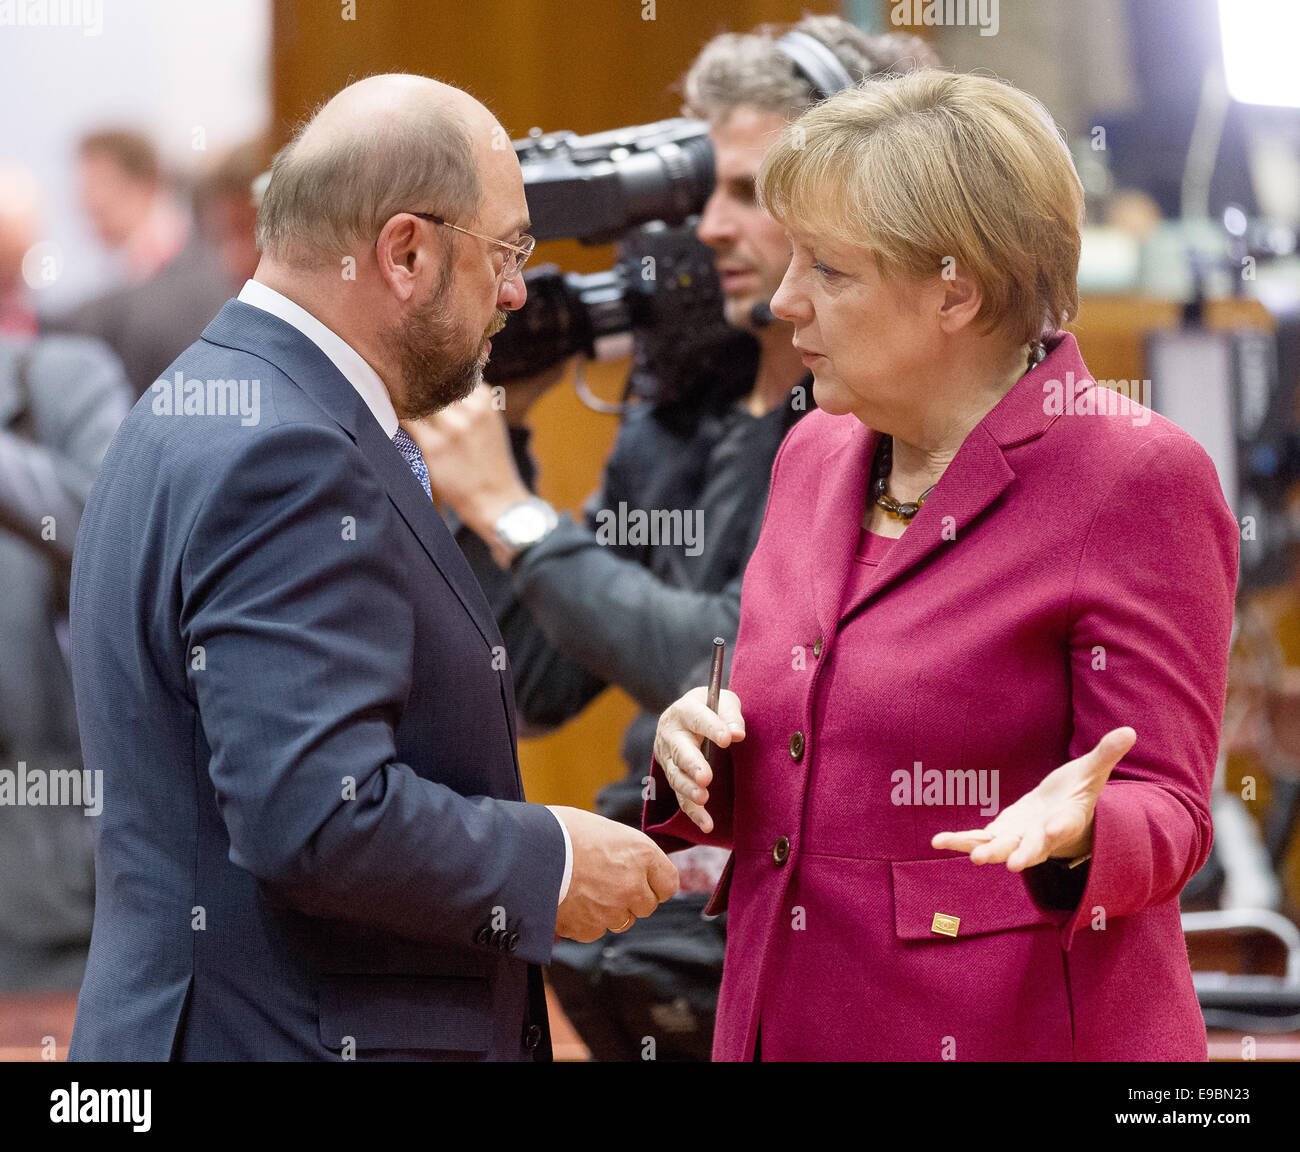 Bruxelles, Belgique. 23 Oct, 2014. La chancelière fédérale allemande Angela Merkel (R) et le président du Parlement européen, l'allemand Martin Schulz (L) chat avant le début du sommet de l'UE au siège du Conseil de l'UE à Bruxelles, Belgique, 23 octobre 2014. Les dirigeants de l'UE s'étaient réunis pour débattre d'un nouvel ensemble d'objectifs climatiques pour 2030 à mesure que la pression monte pour eux d'établir une base de référence pour l'année prochaine des négociations internationales sur le climat. Les dirigeants discuteront également de l'épidémie d'Ebola en Afrique de l'Ouest et de la crise en Ukraine. Photo : Thierry Monasse/DPA - PAS DE FIL - SERVICE/dpa/Alamy Live News Banque D'Images